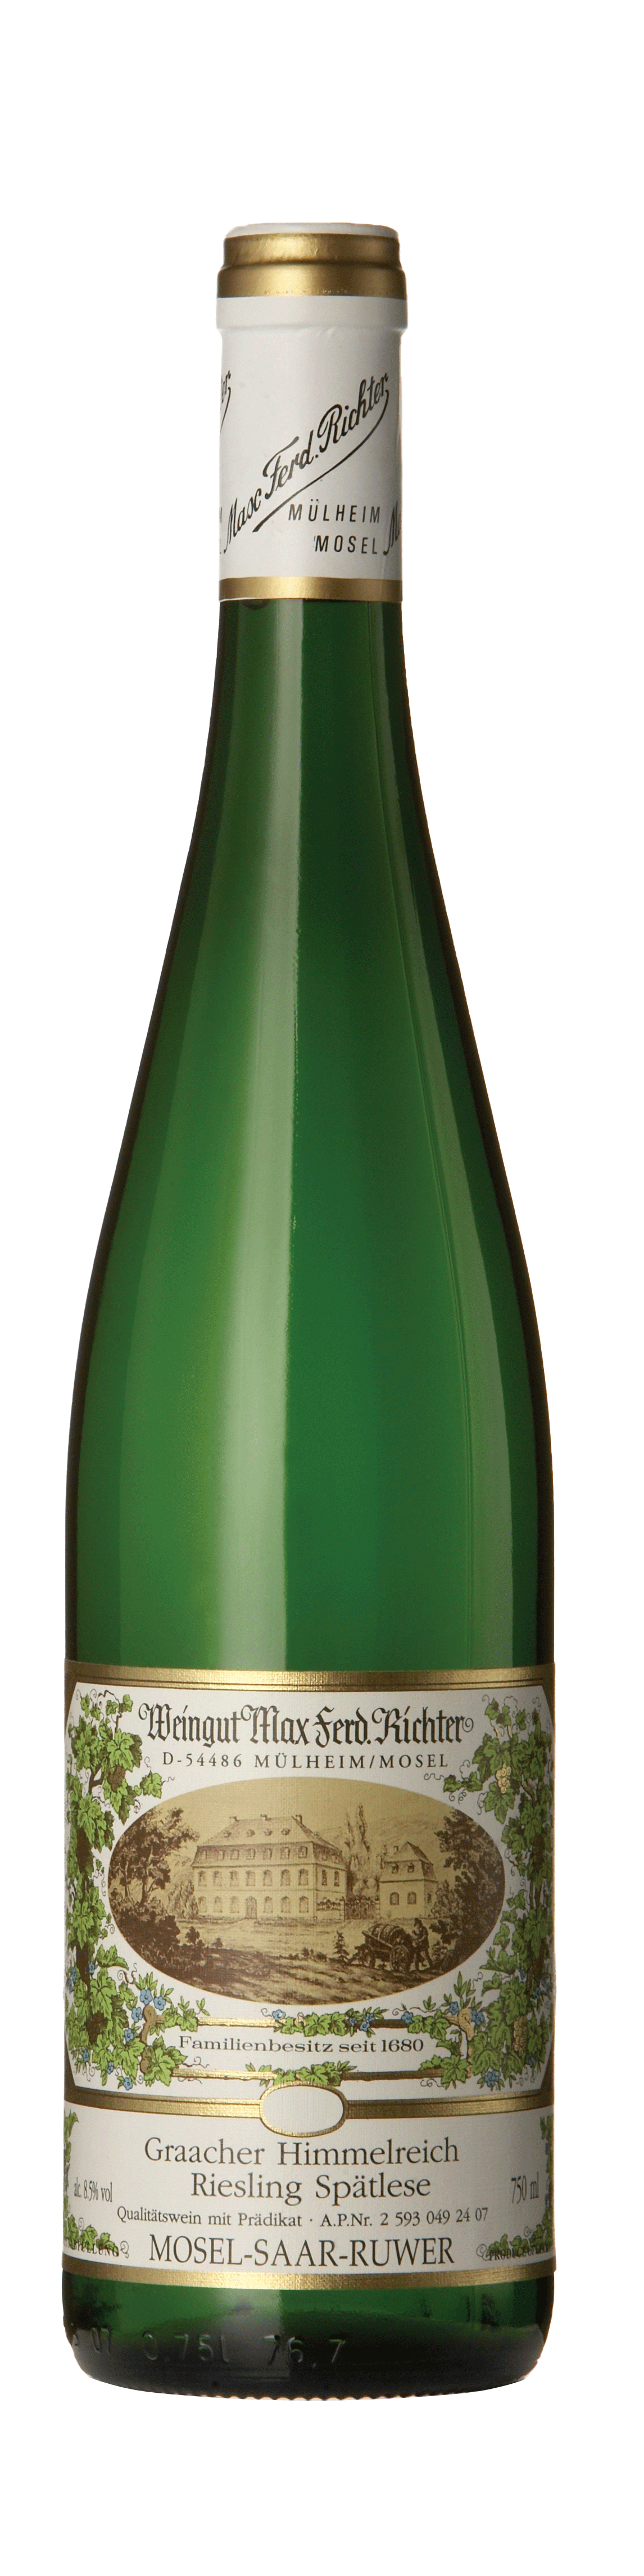 Bottle shot - Wéingut Max Ferdinand Richter, Riesling Spätlese, QmP, Graacher Himmelreich, Mosel, Germany